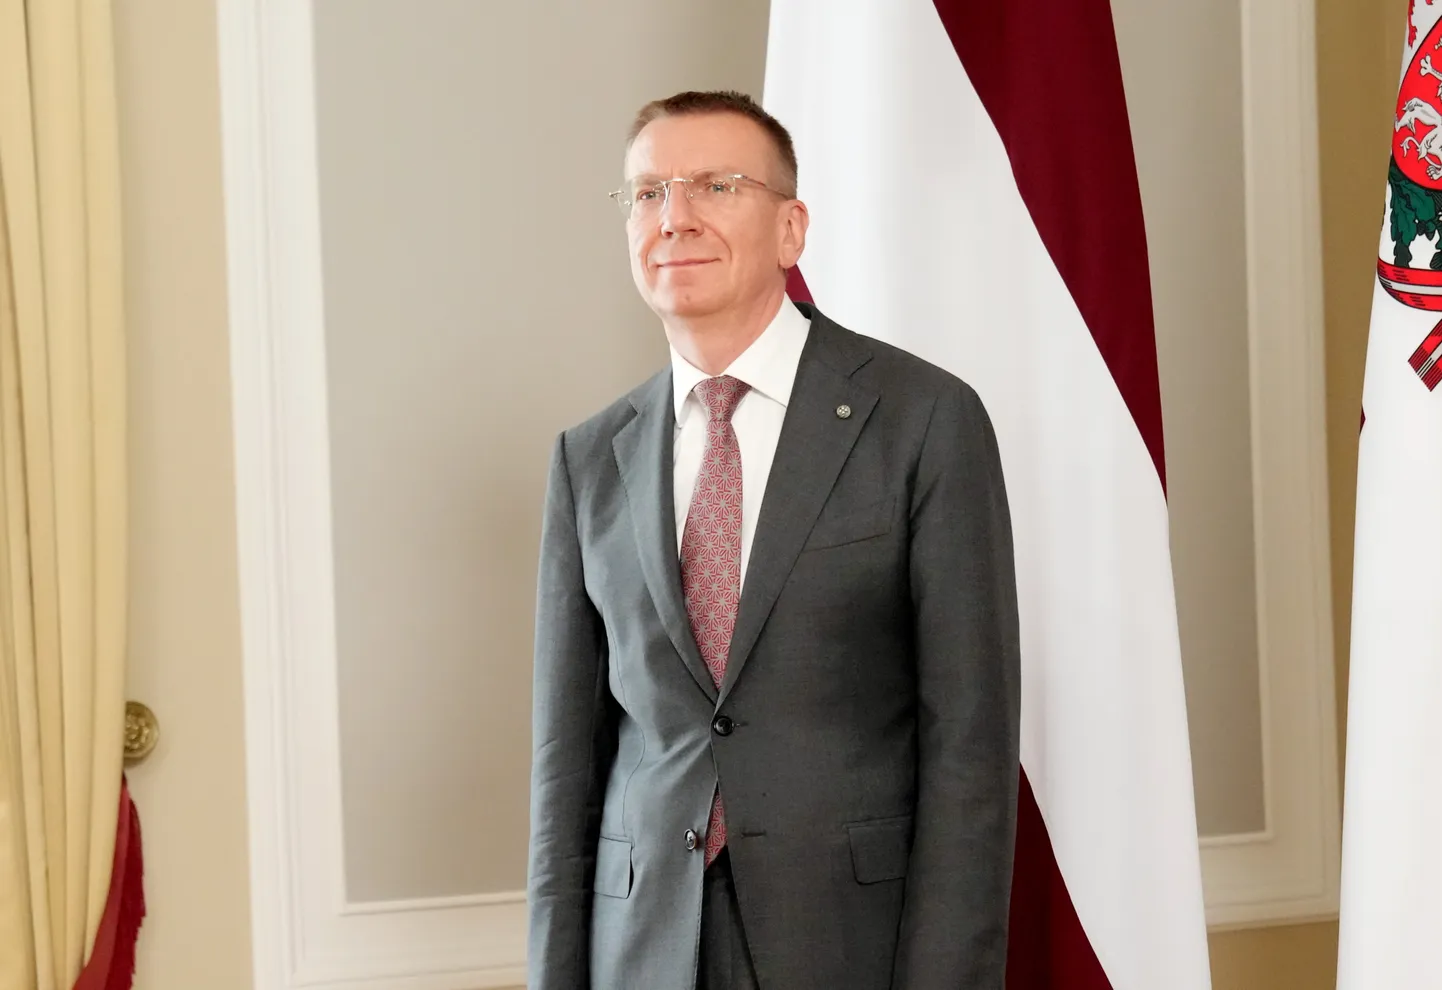 Valsts prezidents Edgars Rinkēvičs piedalās Rīgas apgabaltiesas tiesneša Elvija Vēbera svinīgajā zvēresta došanas ceremonijā Rīgas pilī.